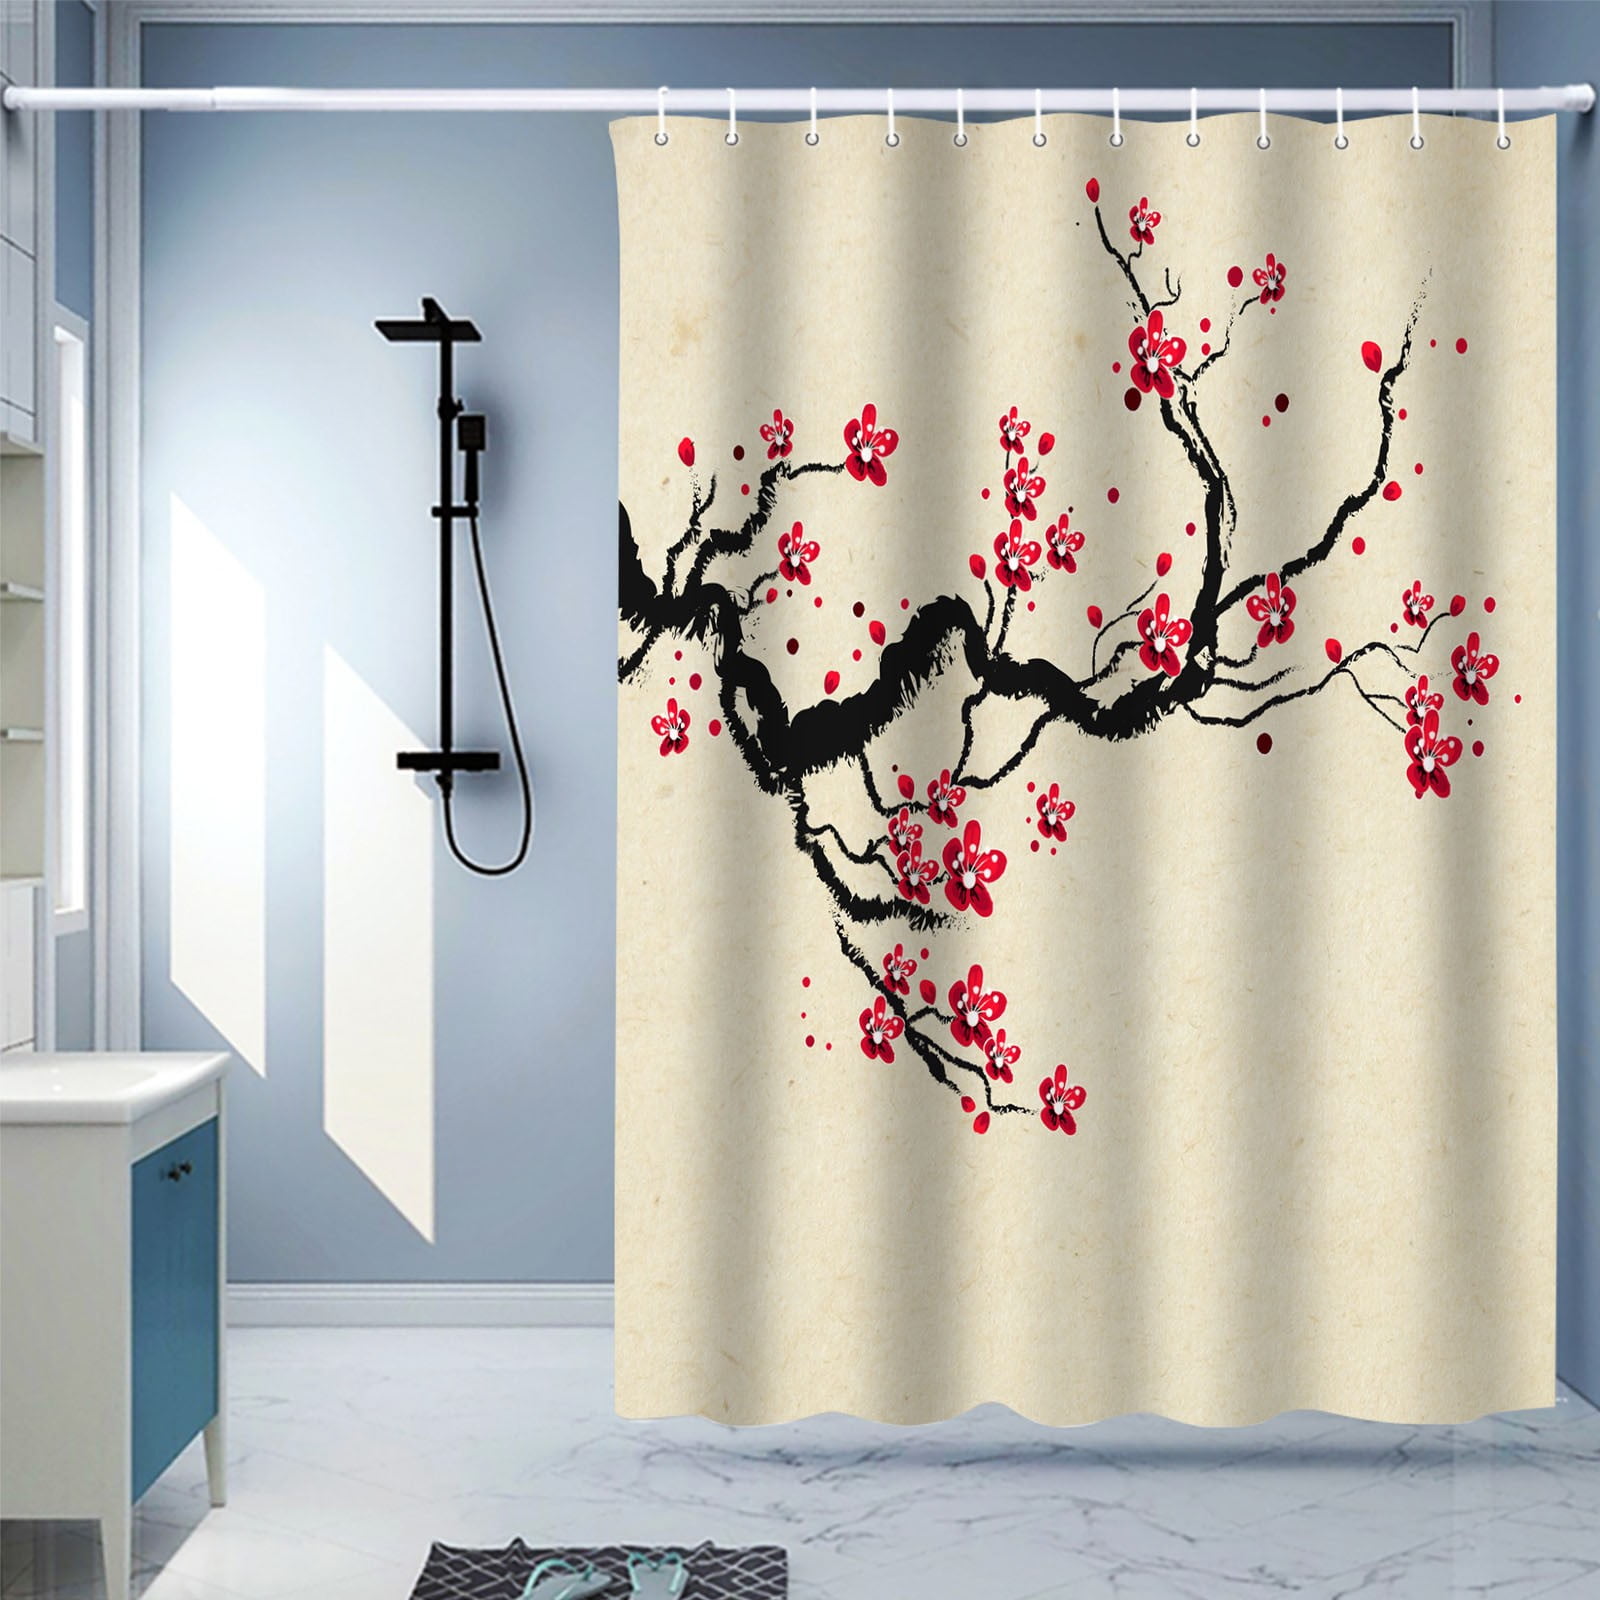 Cool Flowers Waterproof Bathroom Polyester Shower Curtain Liner Water Resistant 